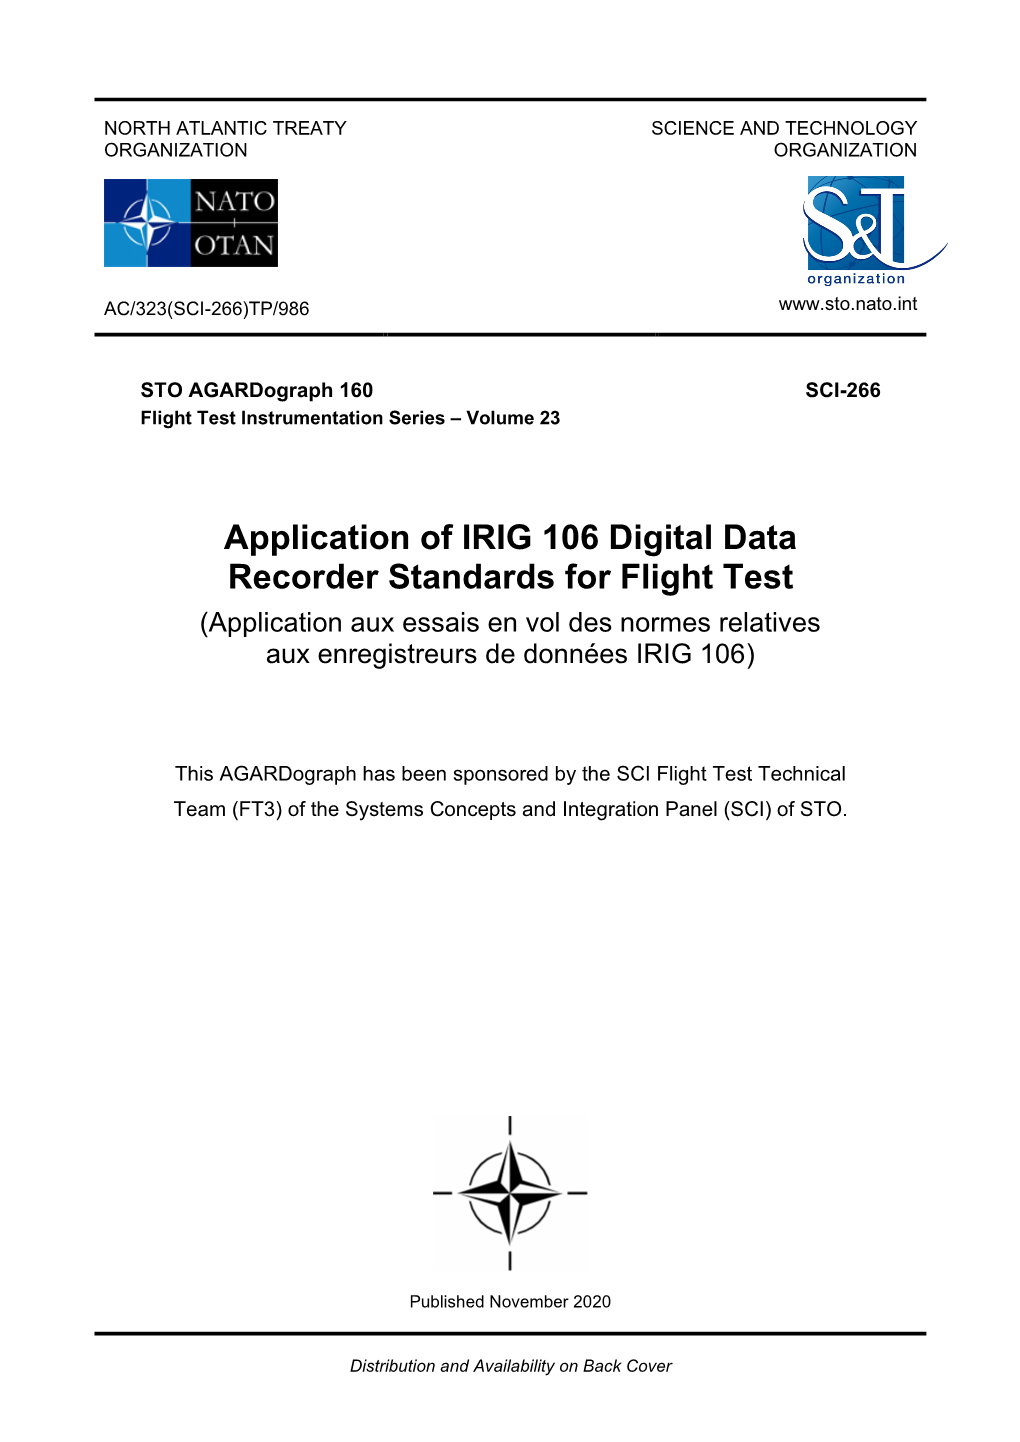 Application of IRIG 106 Digital Data Recorder Standards for Flight Test (Application Aux Essais En Vol Des Normes Relatives Aux Enregistreurs De Données IRIG 106)